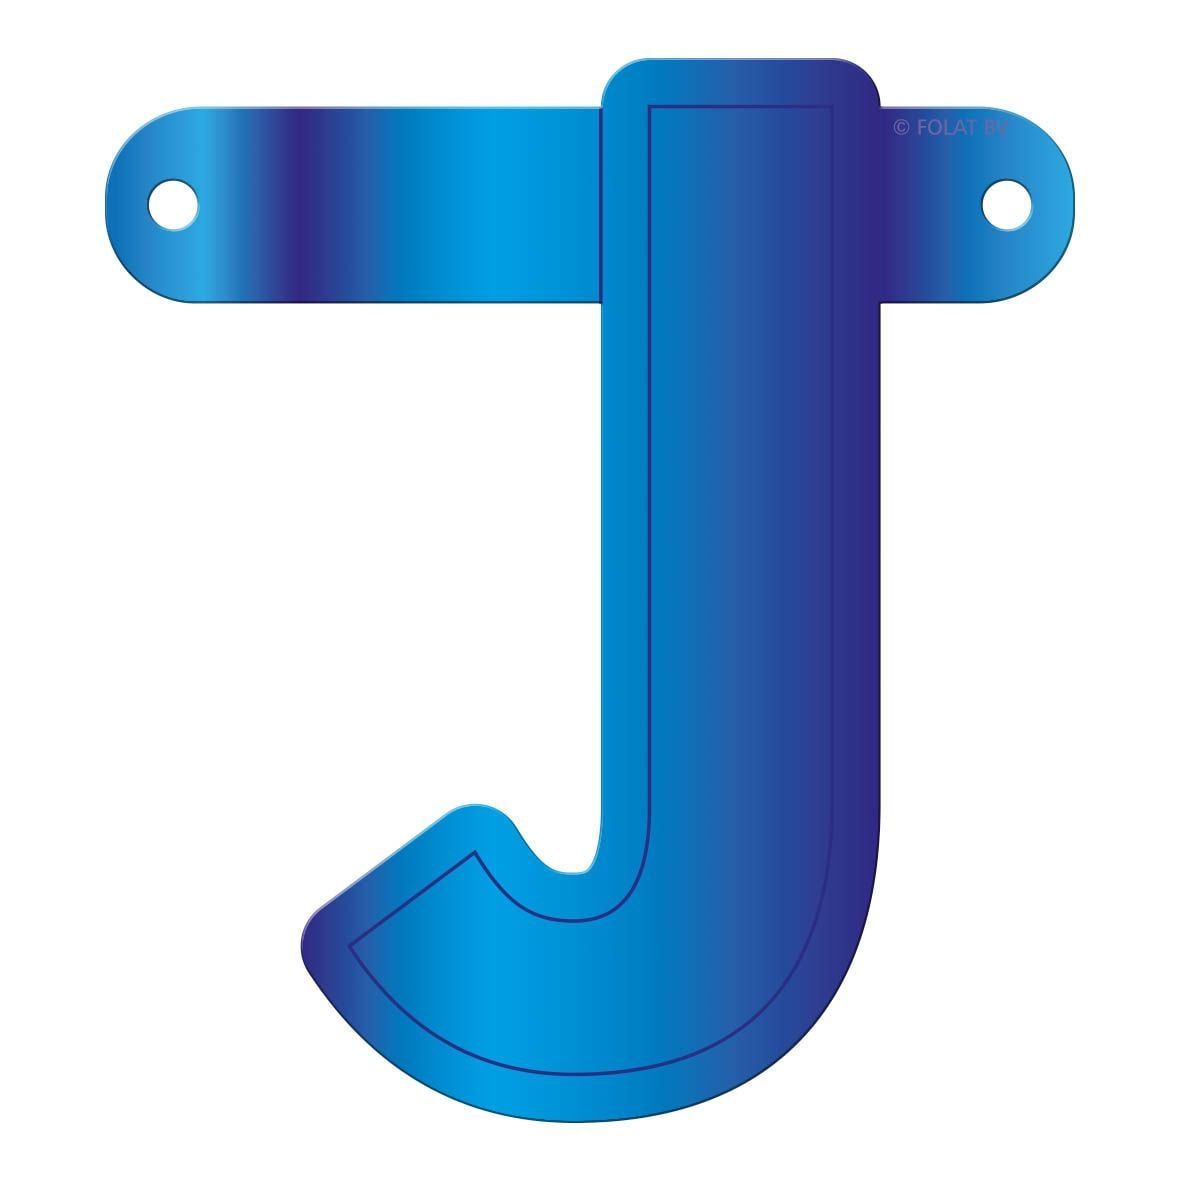 Banner letter J blauw